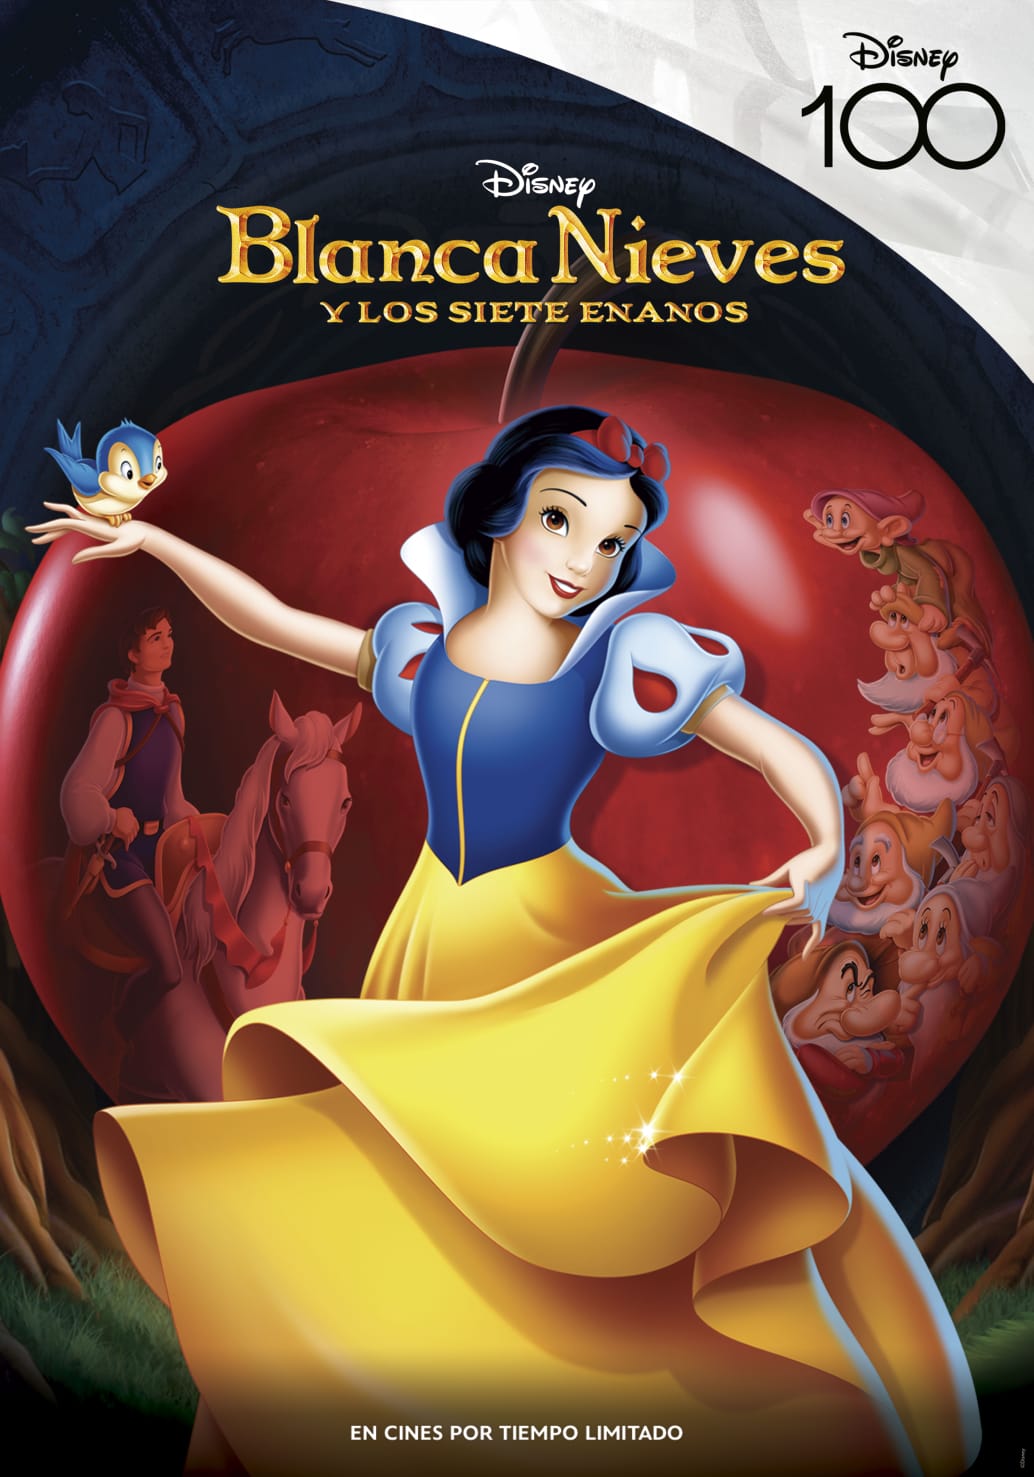 Los clásicos animados de Disney regresan a cines para celebrar su 100° Aniversario 20